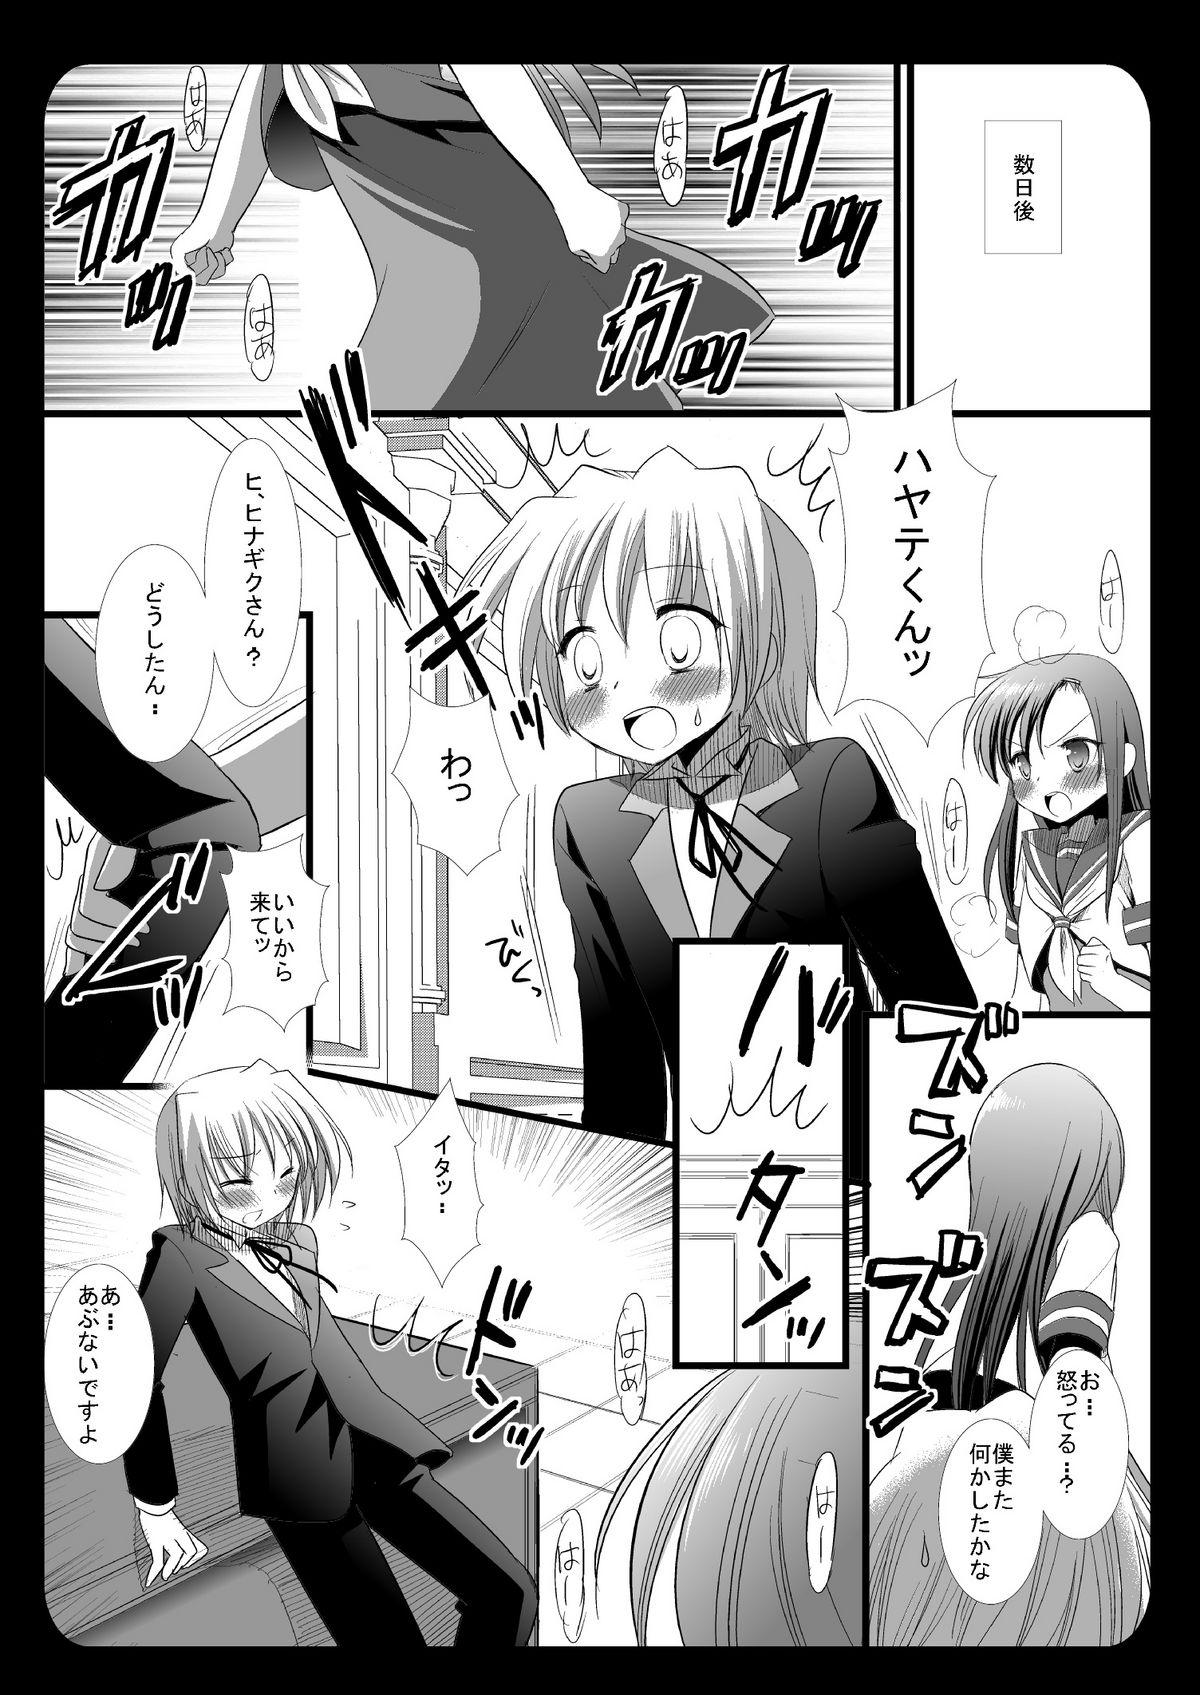 Anal Gape Hinagiku no Himitsu 4 - Hayate no gotoku Face Sitting - Page 7